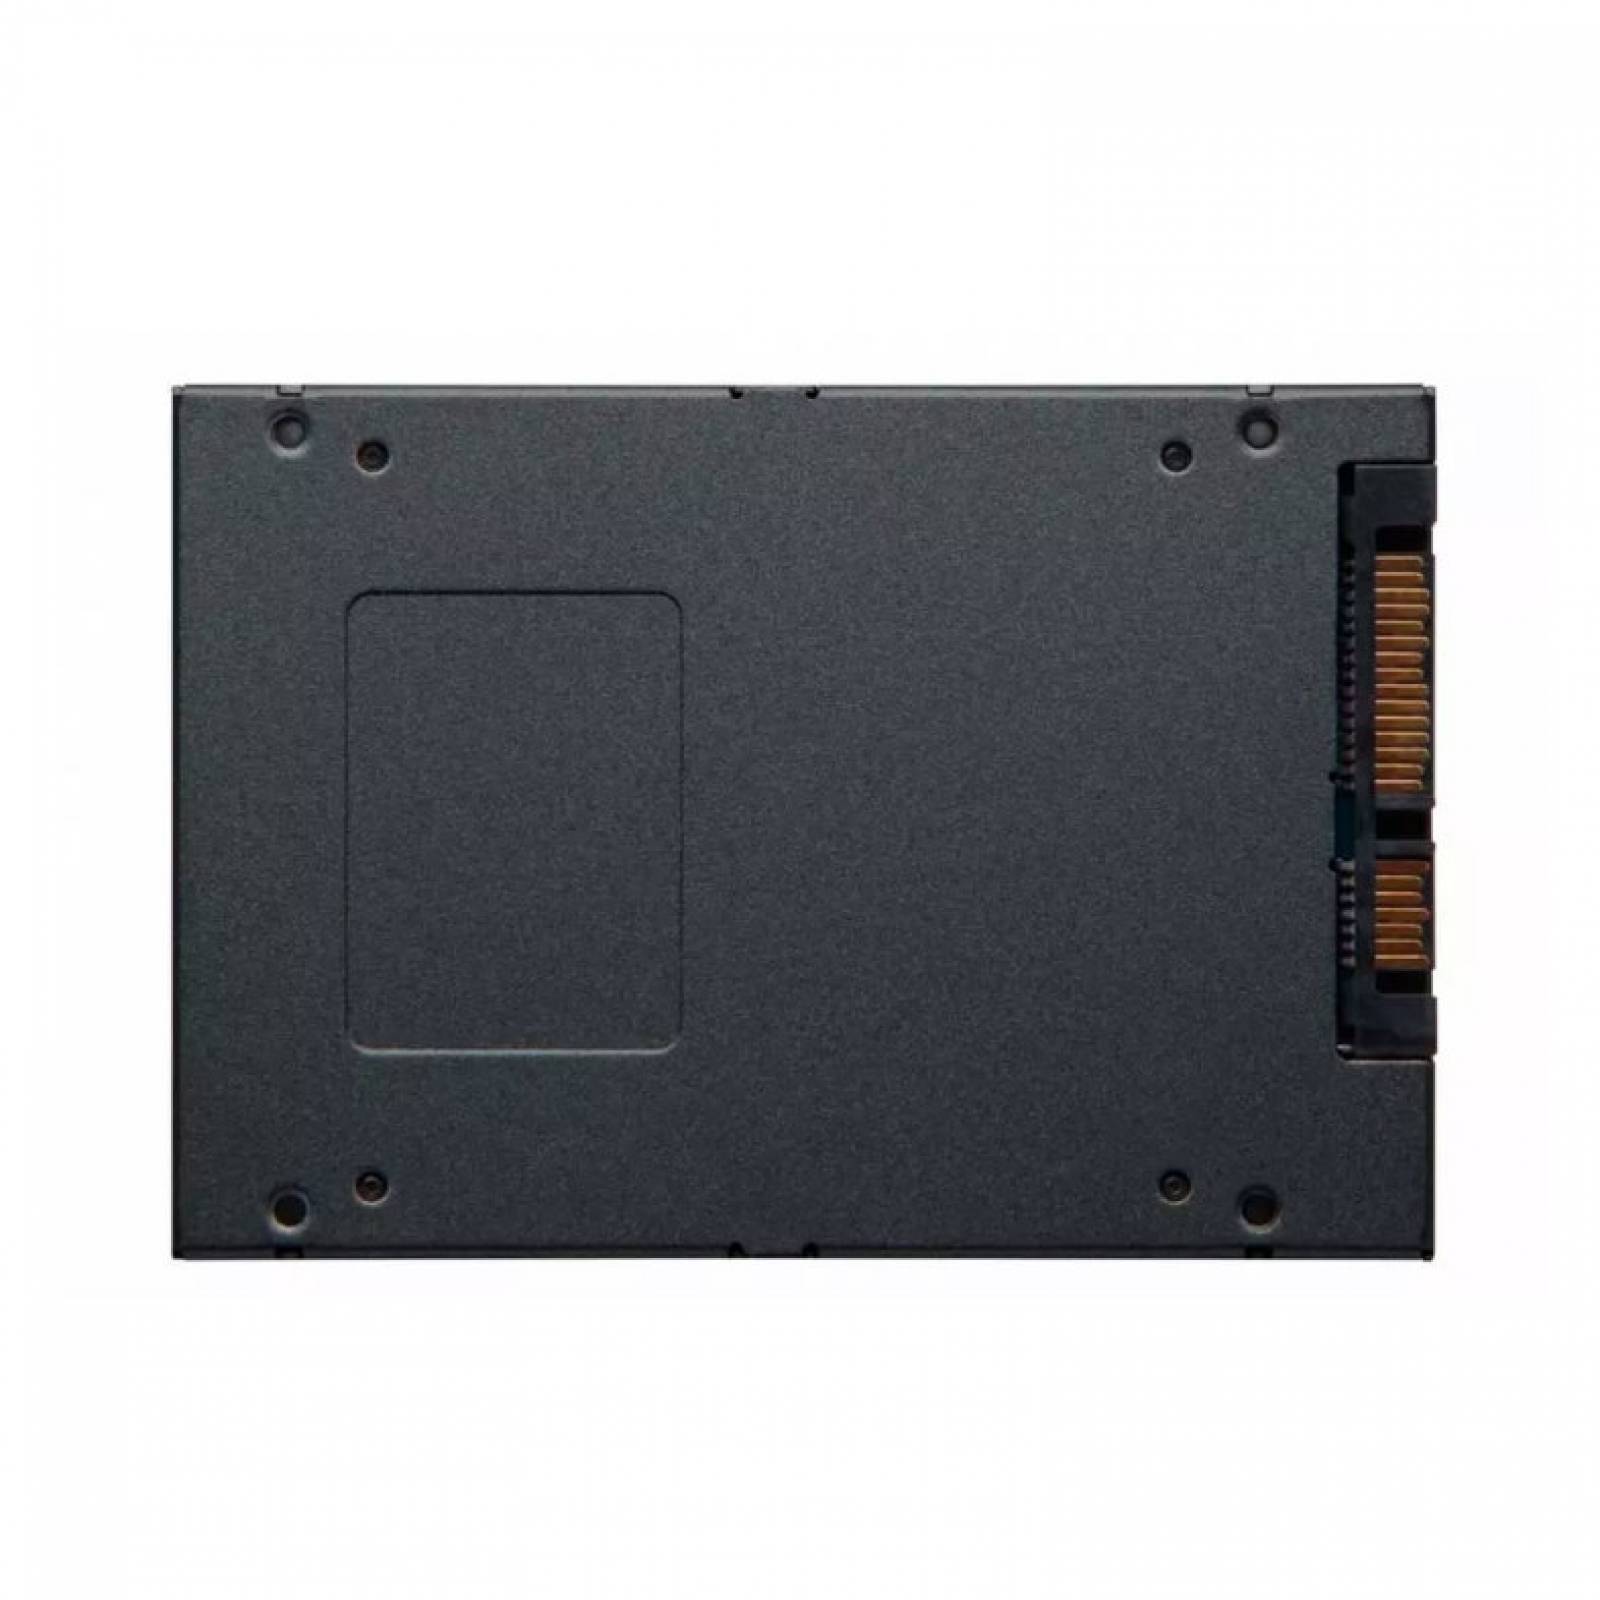 SSD Kingston A400 Disco Duro Solido 960 GB Negro SA400S37